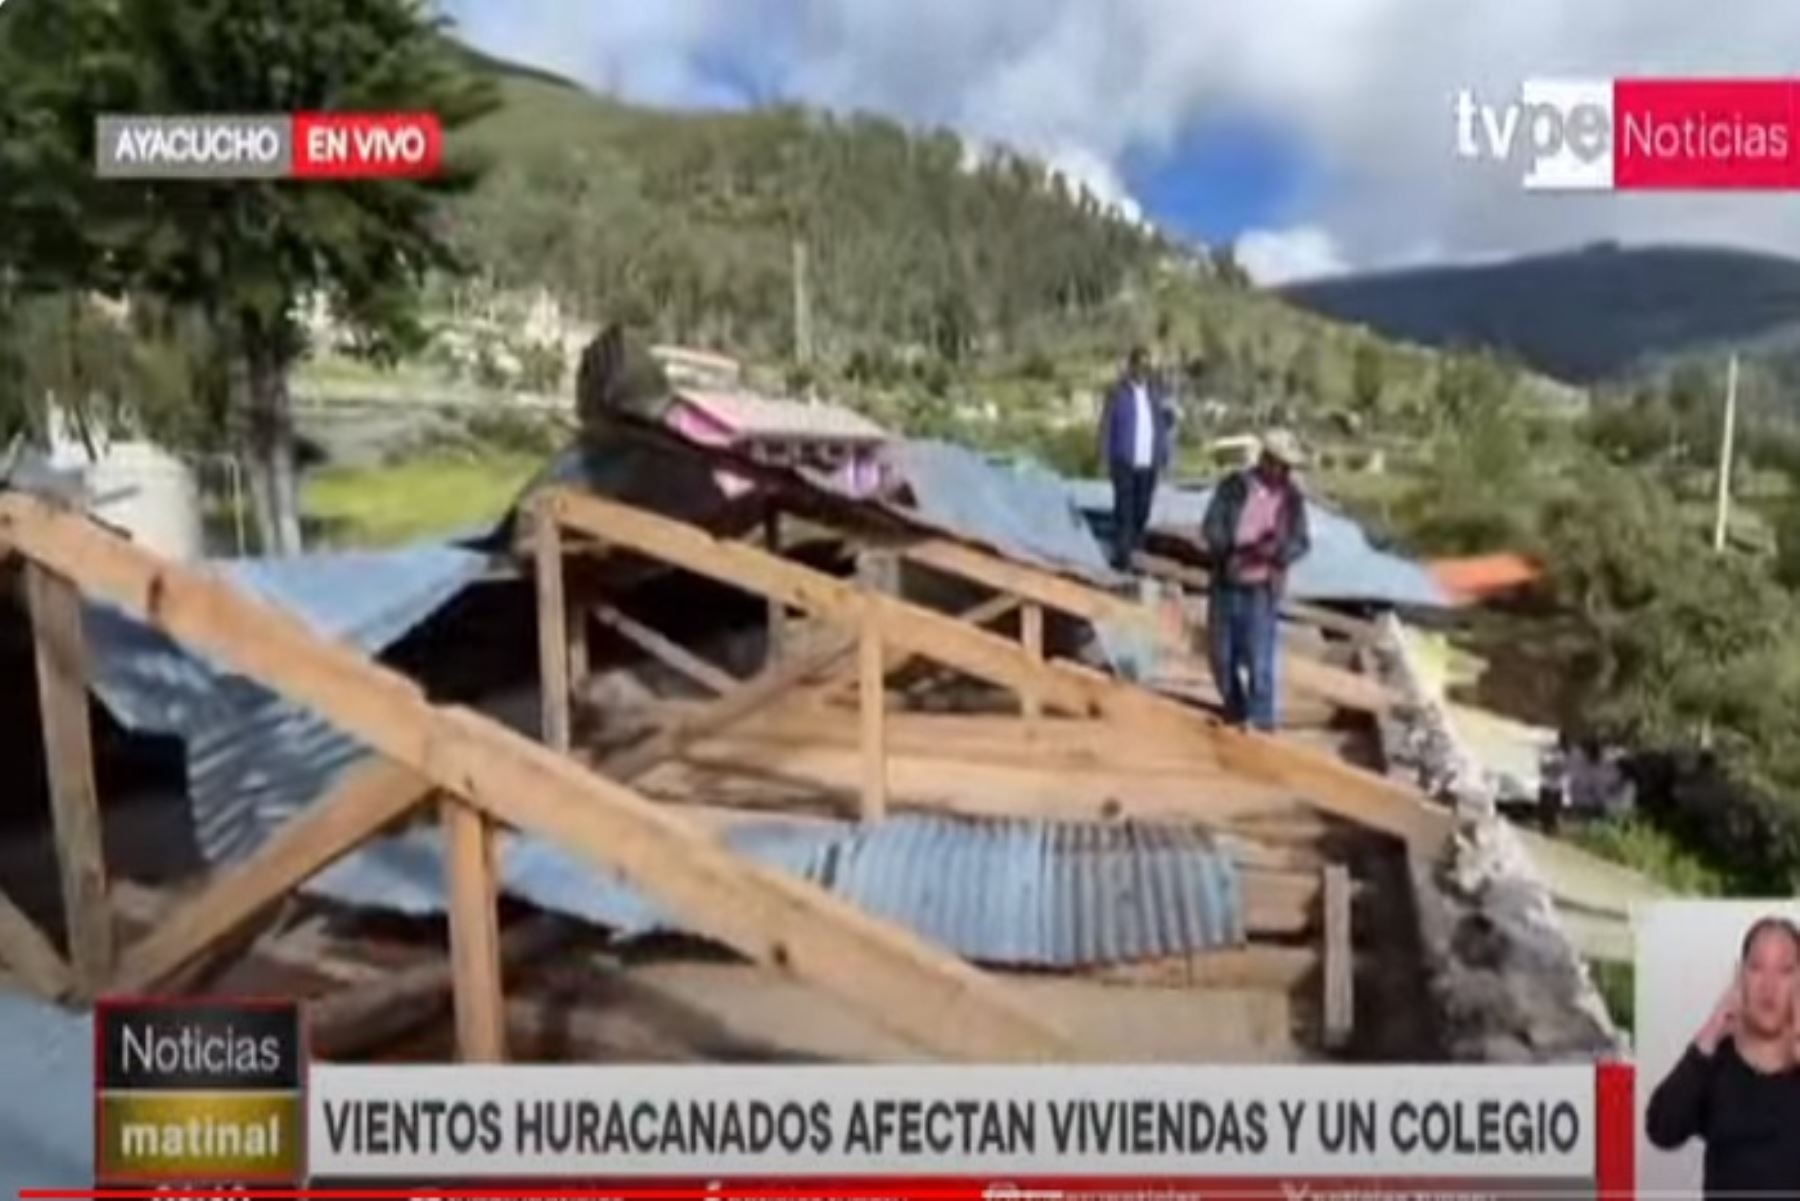 Ayacucho: piden ayuda urgente para colegio en Huarcas destruido por vientos huracanados.